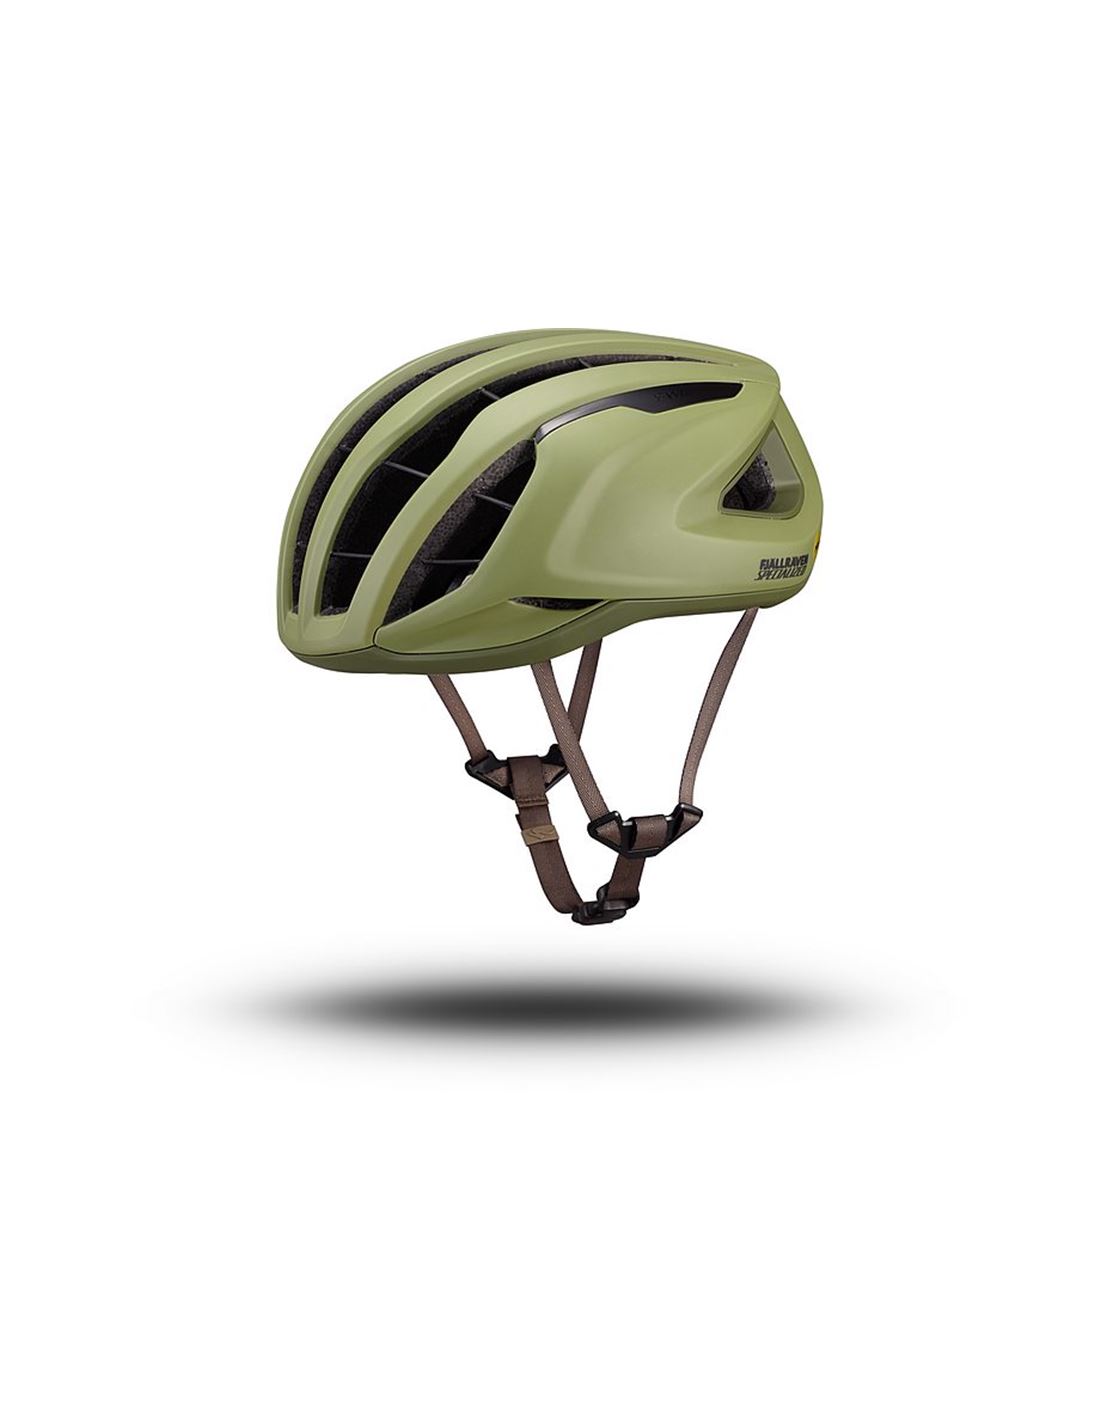 adultos personalizados casco bicicleta de montaña casco